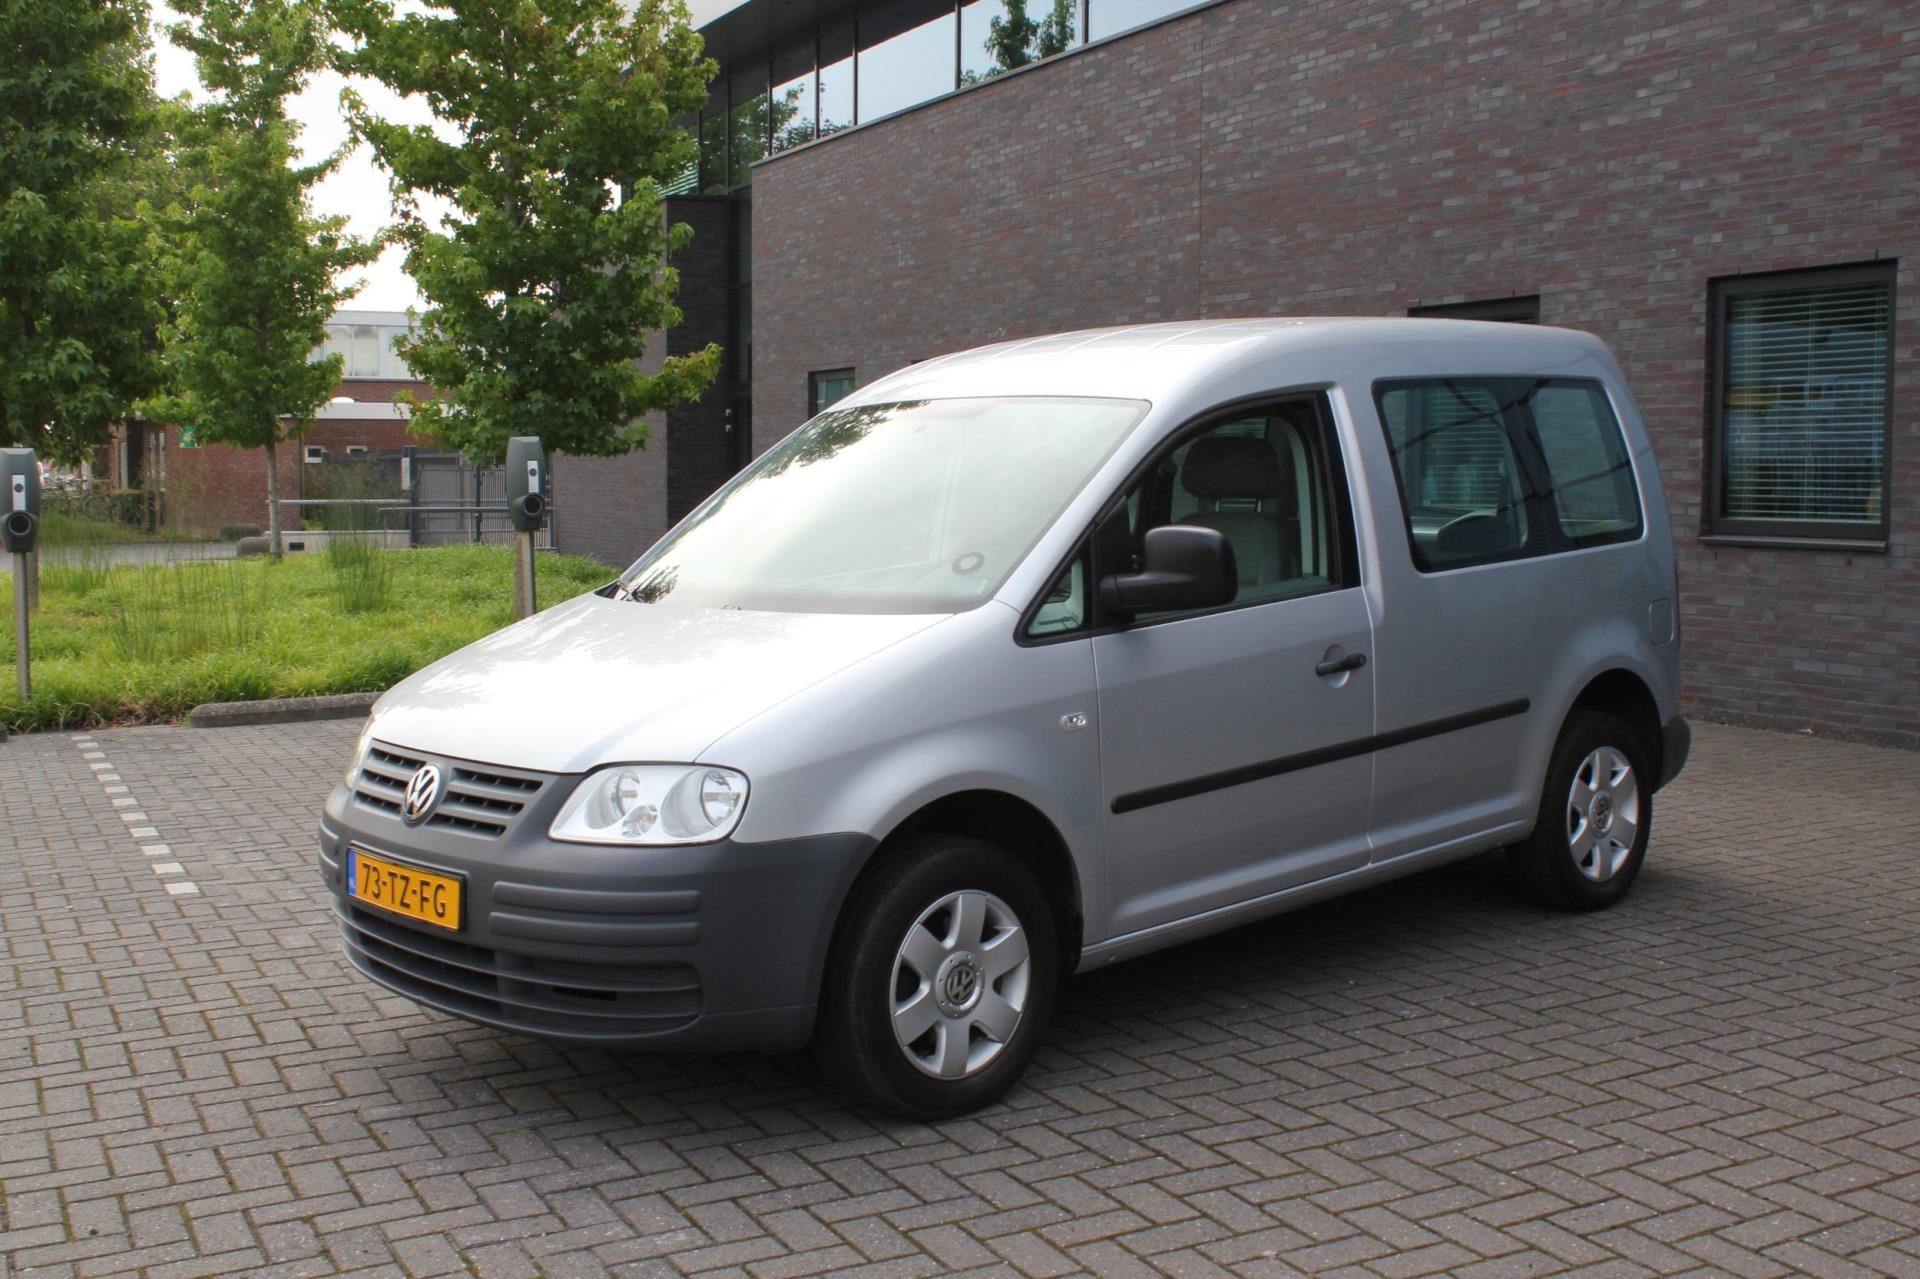 morgen struik onwettig Volkswagen Caddy - 1.4 Optive 5p. Benzine uit 2007 - www.garageautoflex.nl